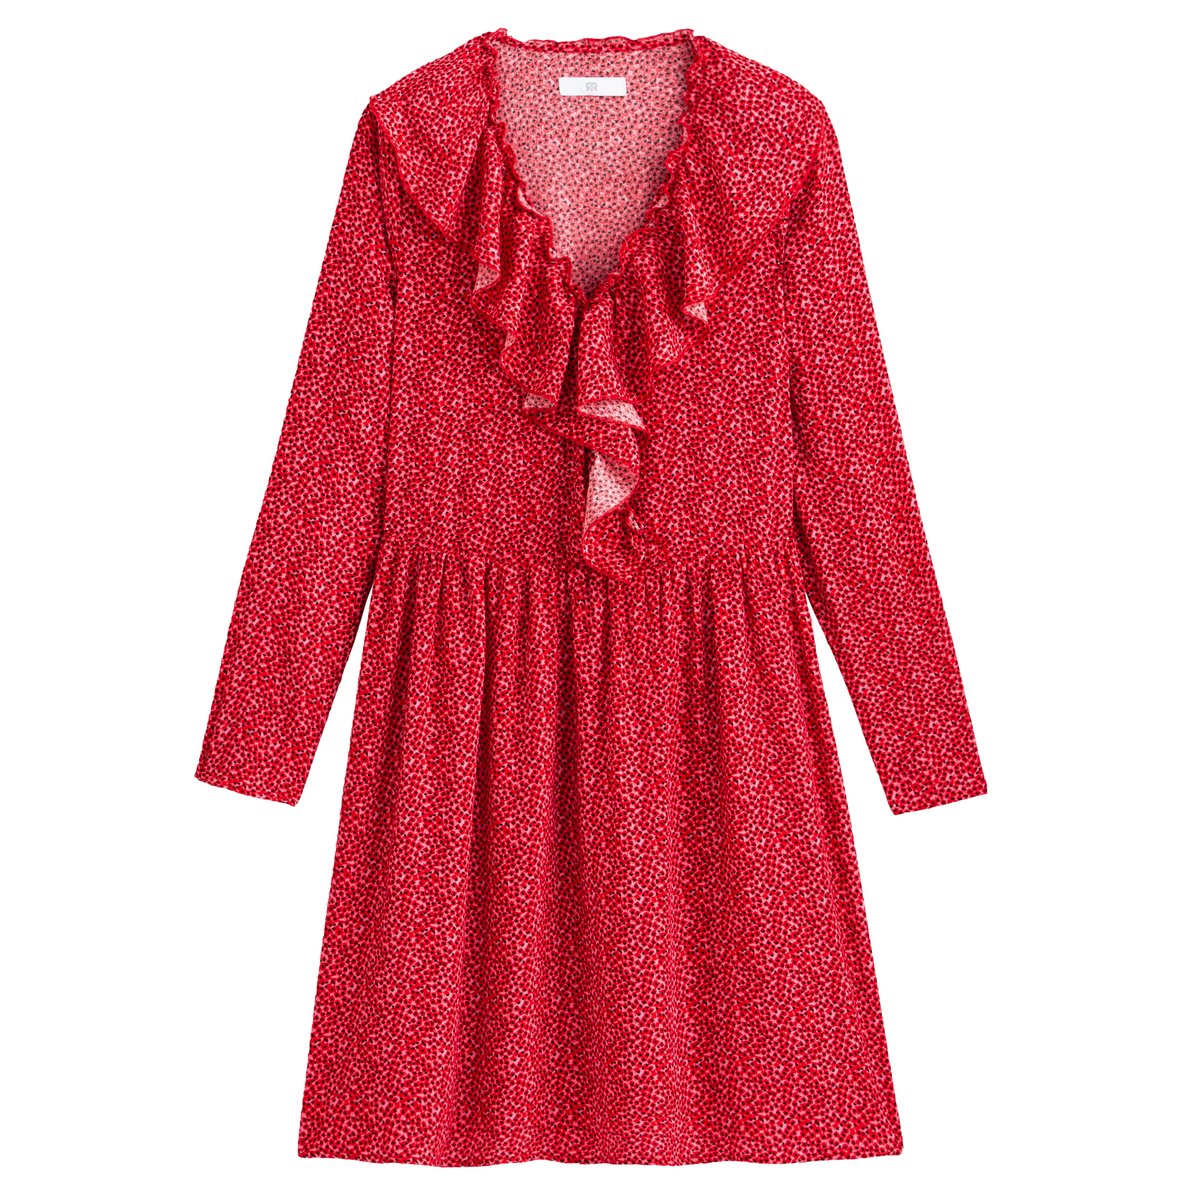 Платье La Redoute С эффектом запаха и с длинными рукавами 36 (FR) - 42 (RUS) розовый, размер 36 (FR) - 42 (RUS) С эффектом запаха и с длинными рукавами 36 (FR) - 42 (RUS) розовый - фото 1